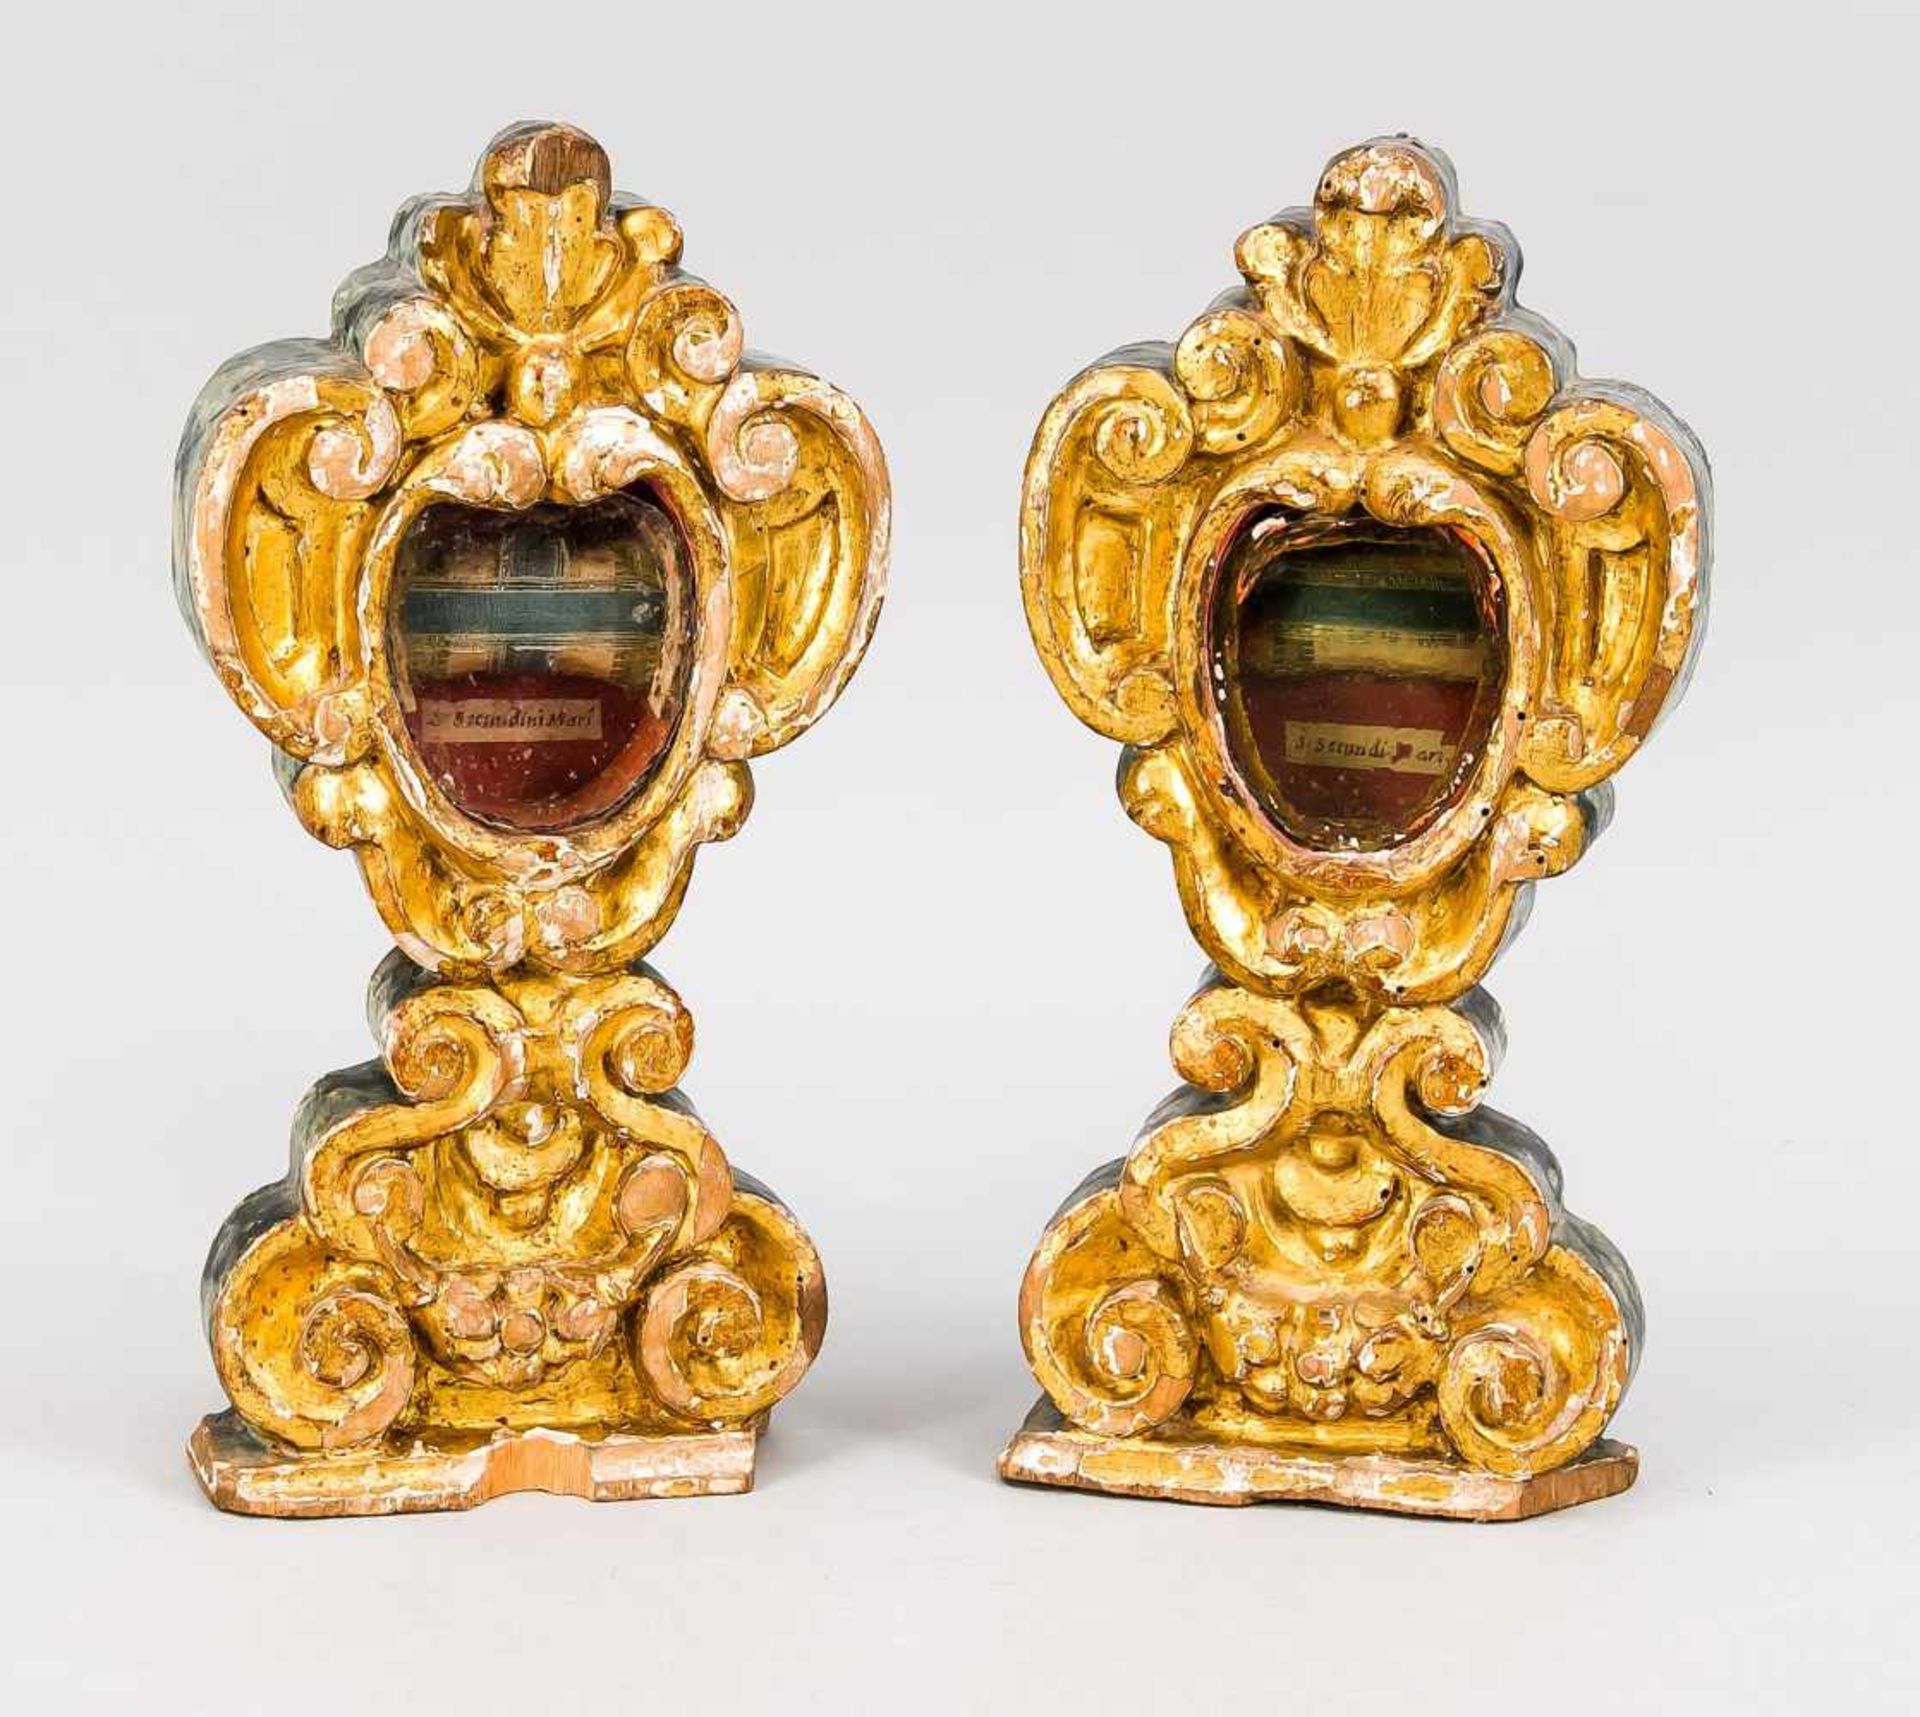 Paar Monstranzen mit Reliquie, 18. Jh., Lindenholzschnitzerei, vergoldet auf Kreidegrund.Gestaltet